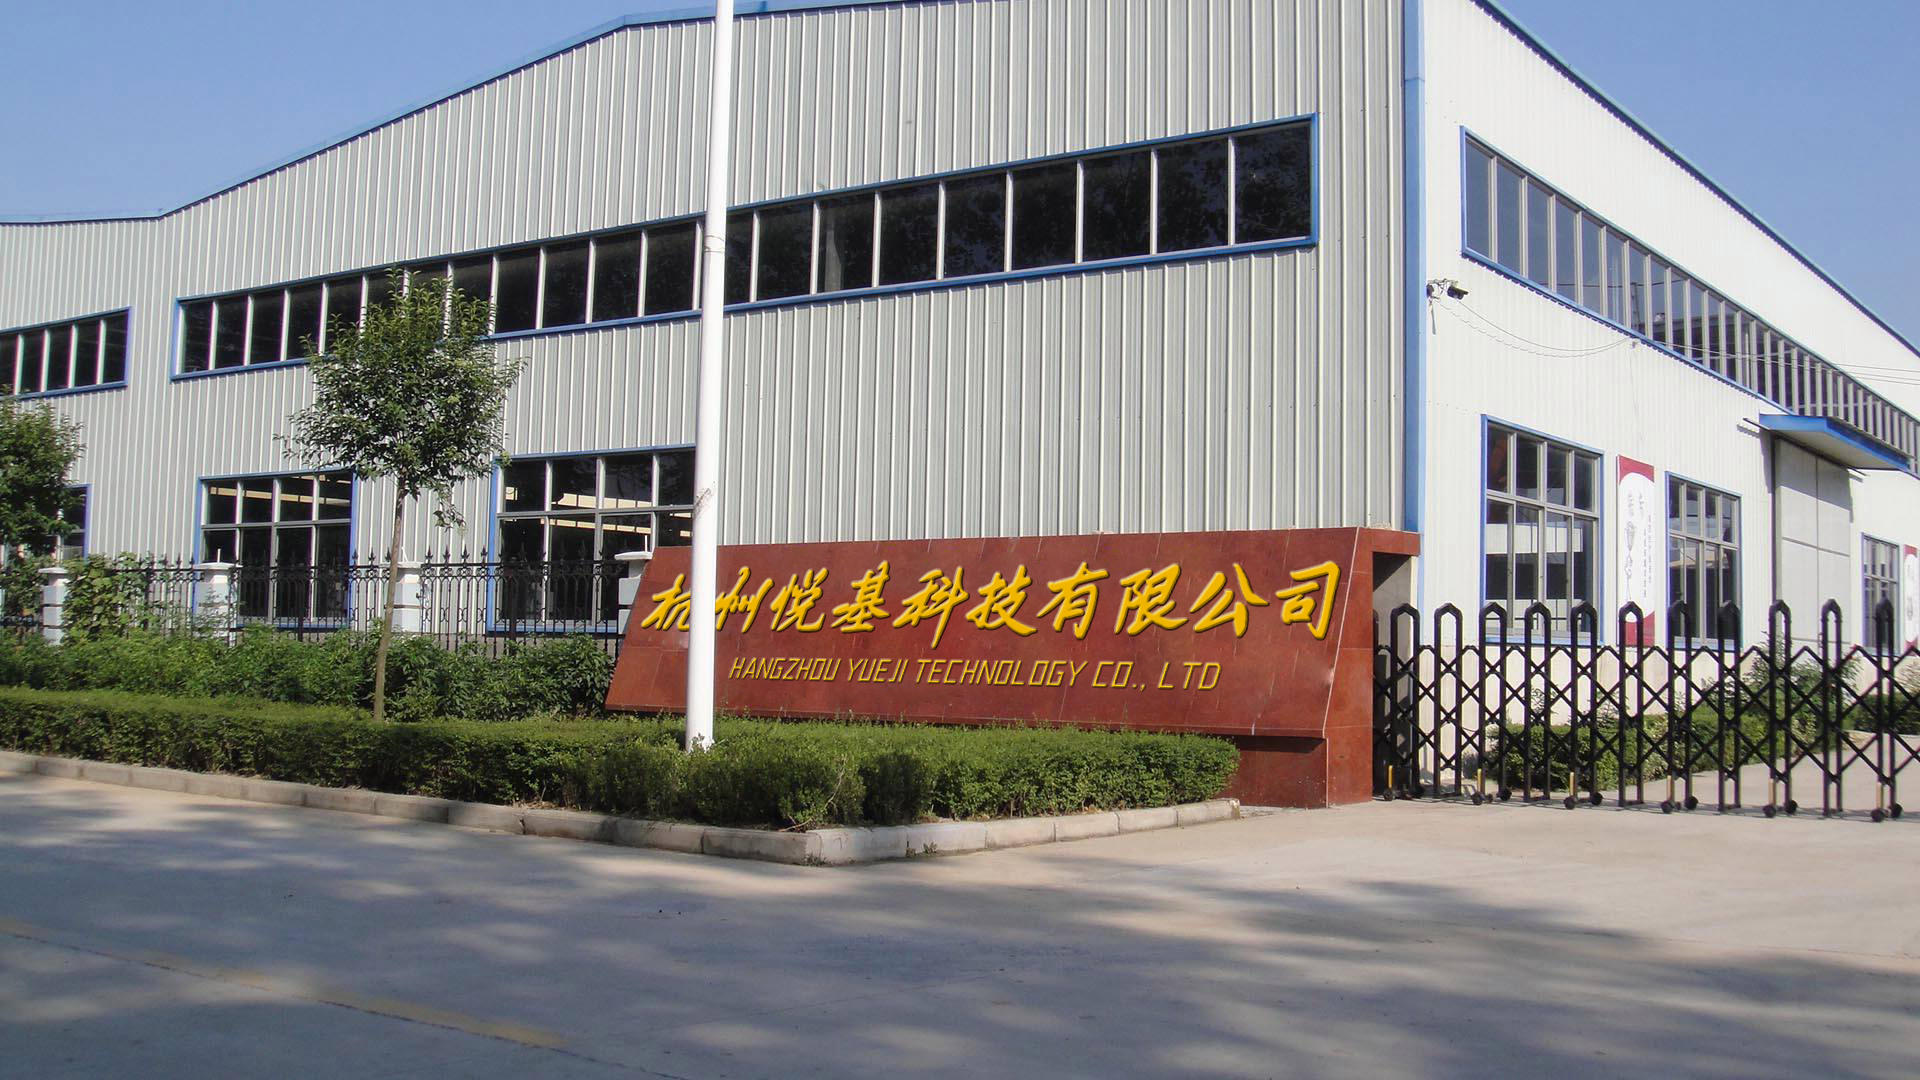   Hangzhou Yueji Technology Co., Ltd